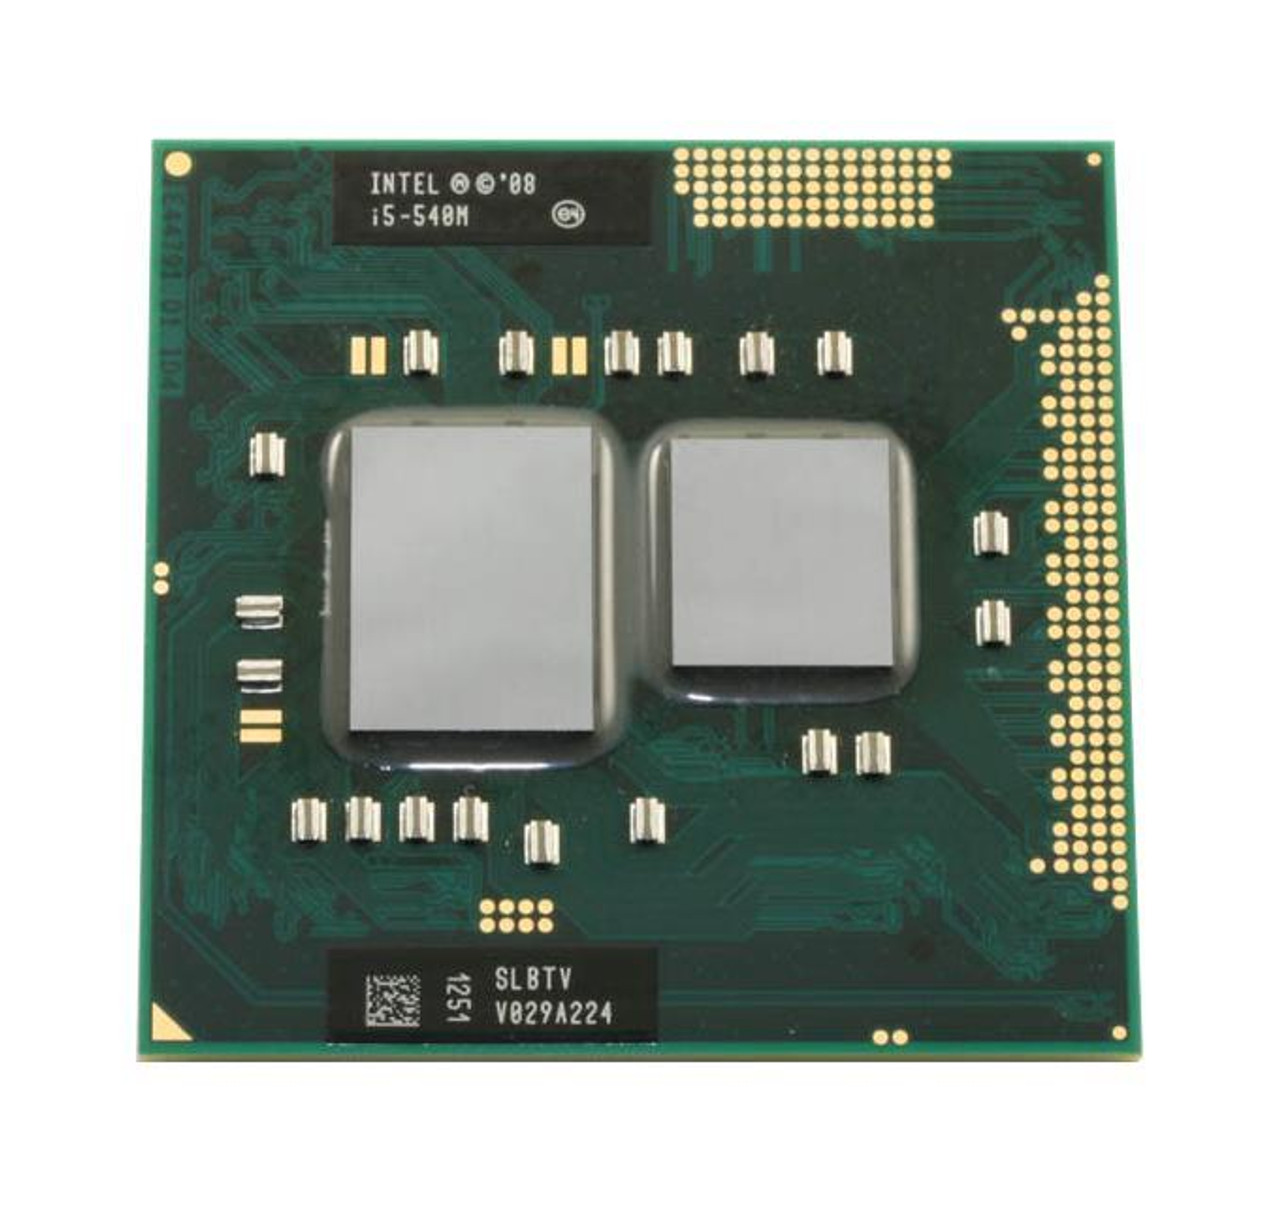 Dell 2.53GHz 2.50GT/s DMI 3MB L3 Cache Intel Core i5-540M Dual-Core Mobile Processor Upgrade